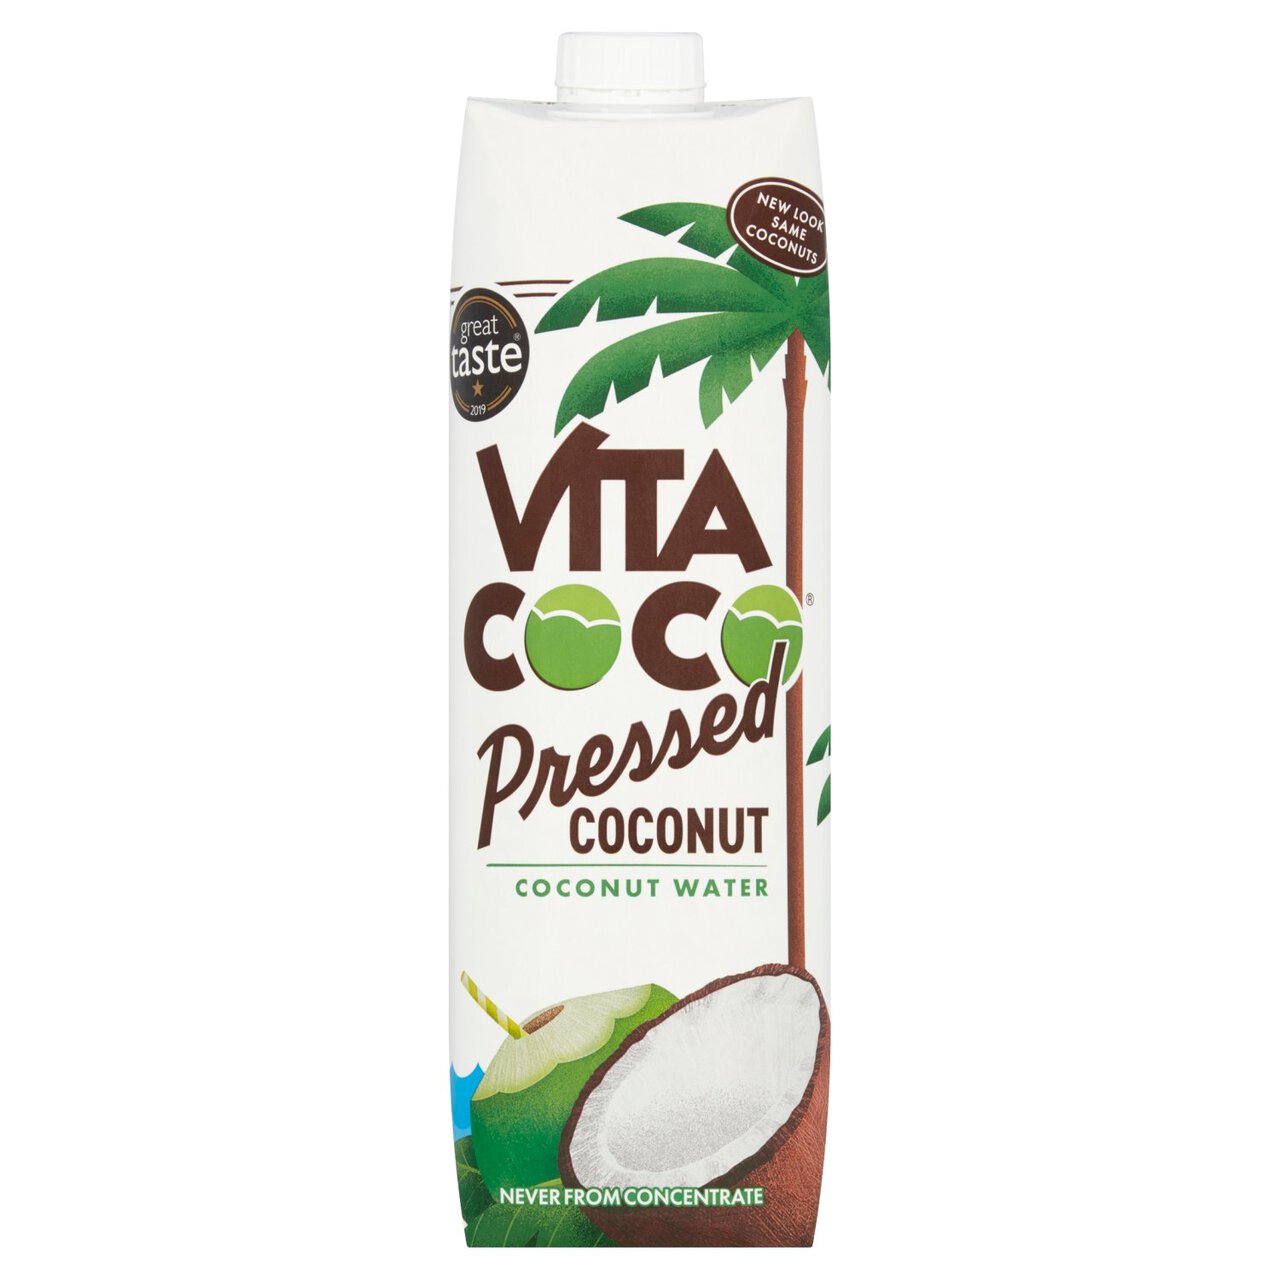 Vita Coco Pressed Coconut Water 1l